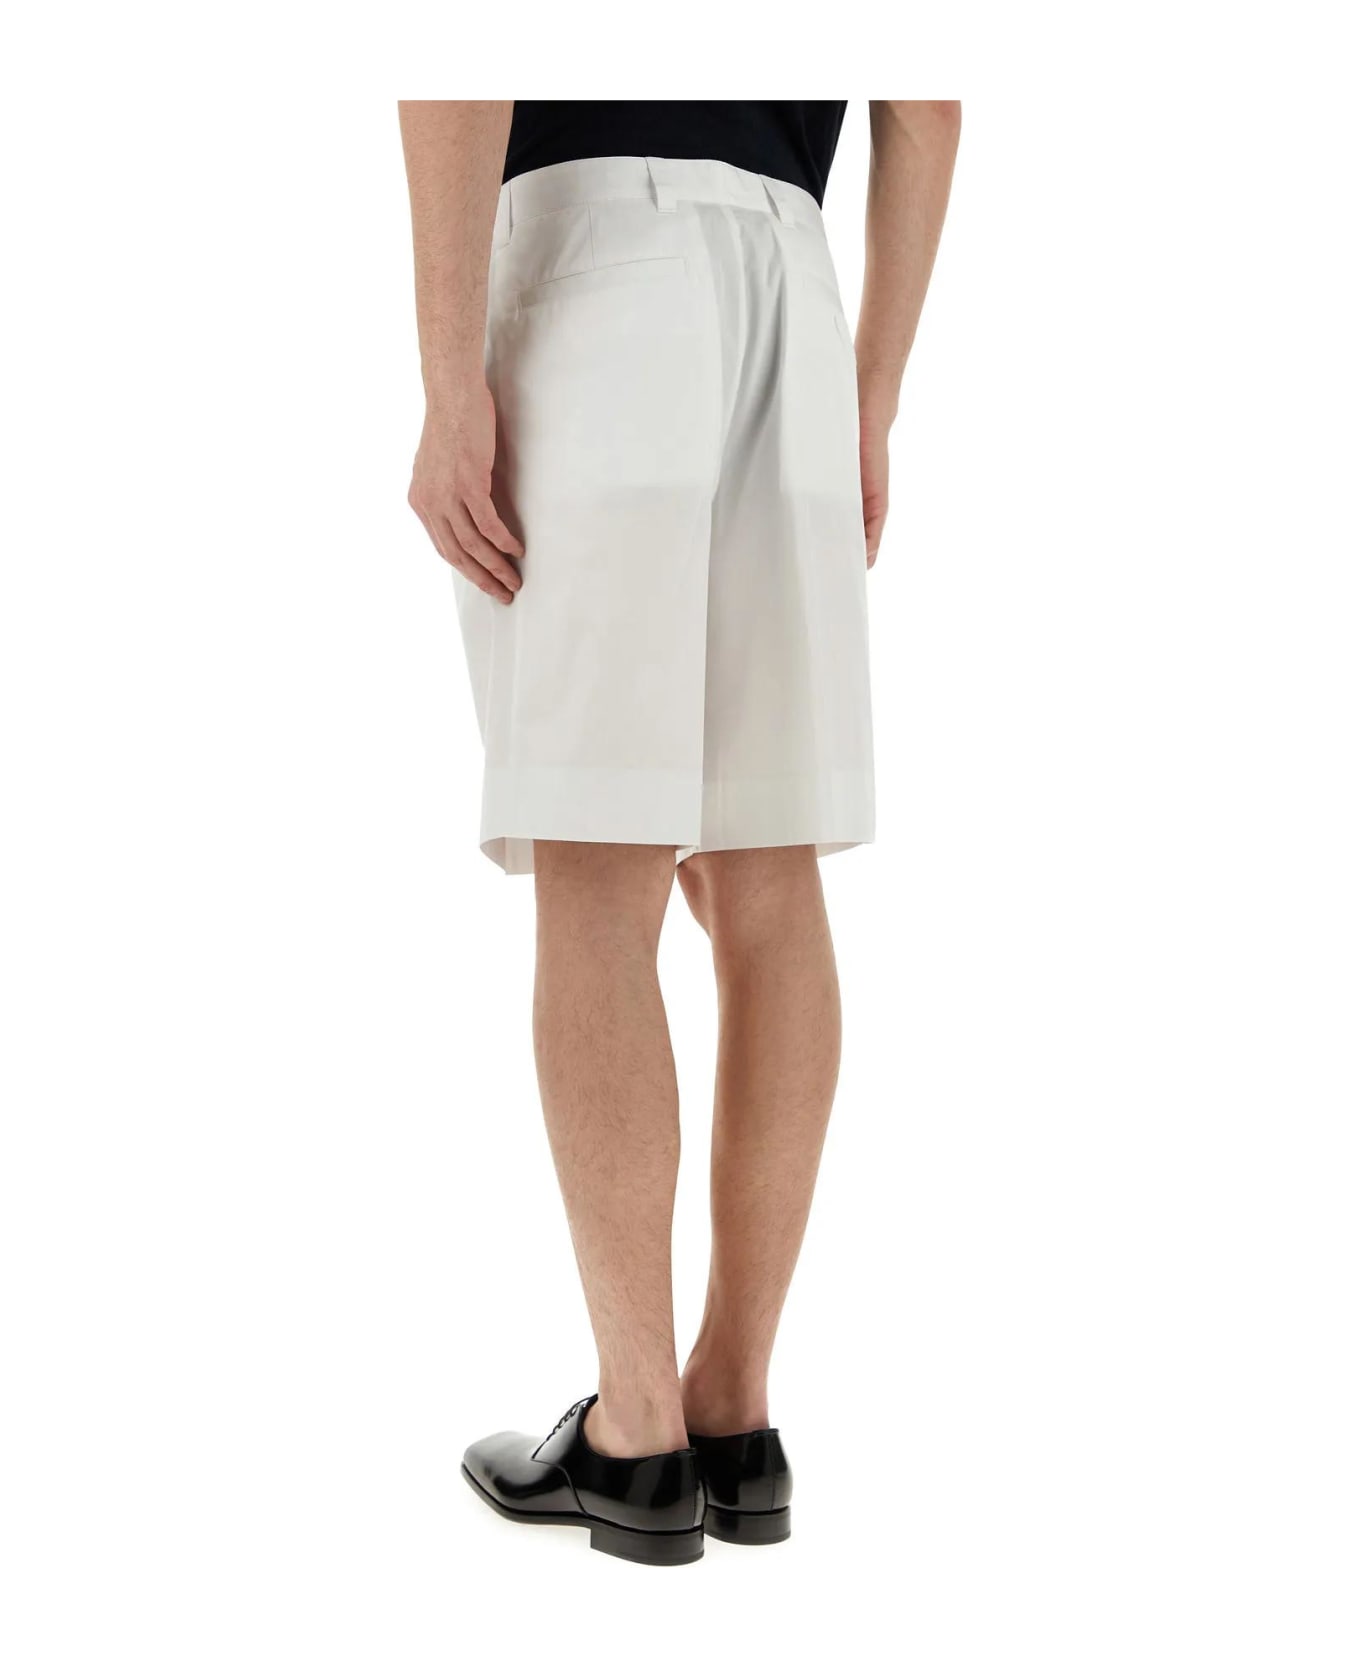 Prada White Cotton Bermuda Shorts - BIANCO